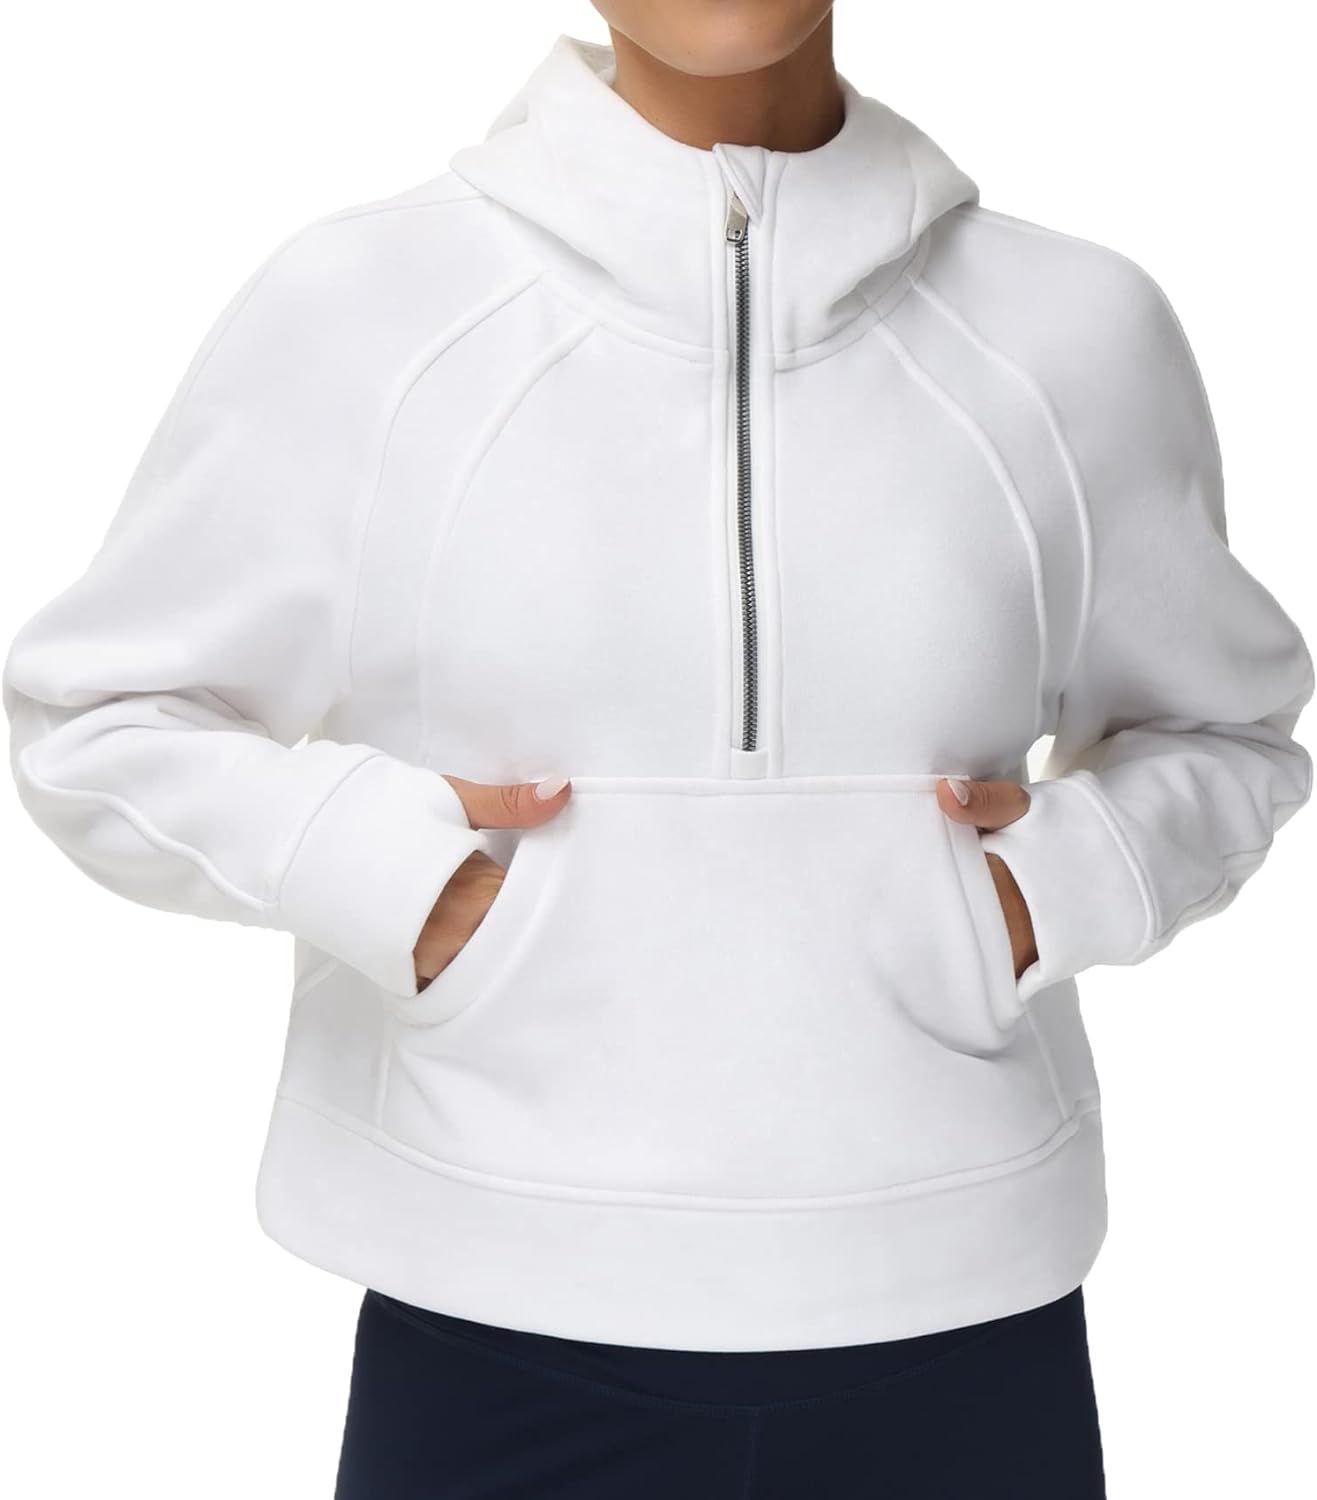 THE GYM PEOPLE Women's Half Zip Hoodies Long Sleeve Fleece Lined Crop Pullover Sweatshirts with P... | Amazon (CA)